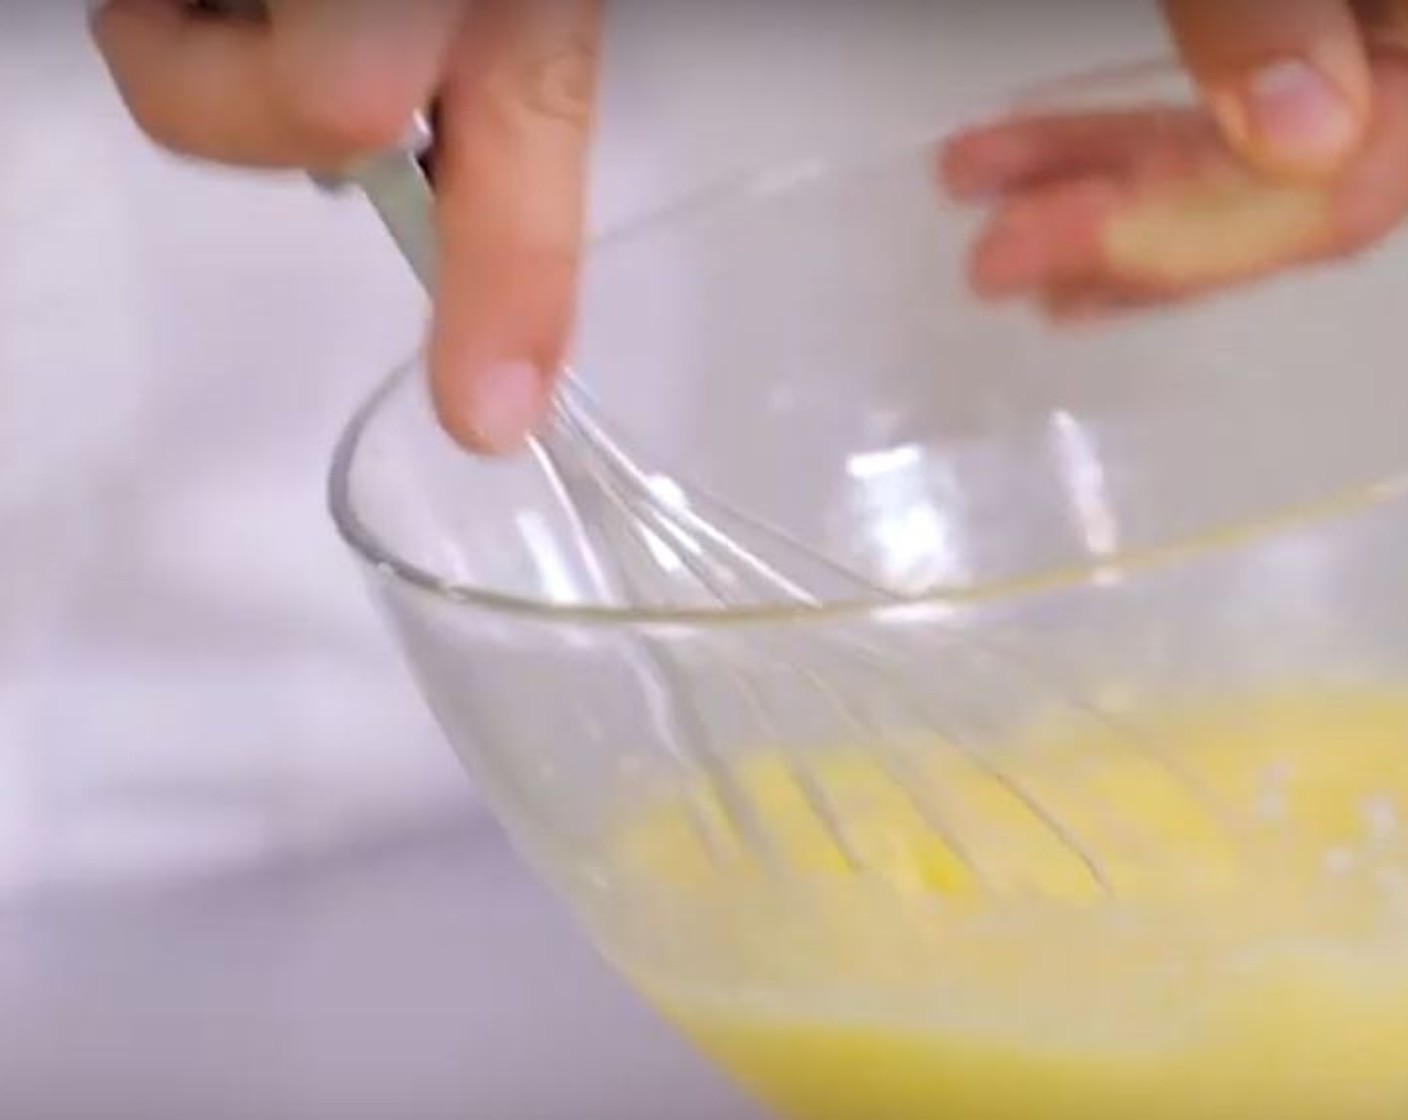 Schritt 1 Zuerst die Butter (7 Teelöffel) schmelzen. In einer Schüssel Eier (2) Zucker (75 g) und den Saft einer Zitrone (1) mixen. Zum Schluss die flüssige Butter unterrühren.